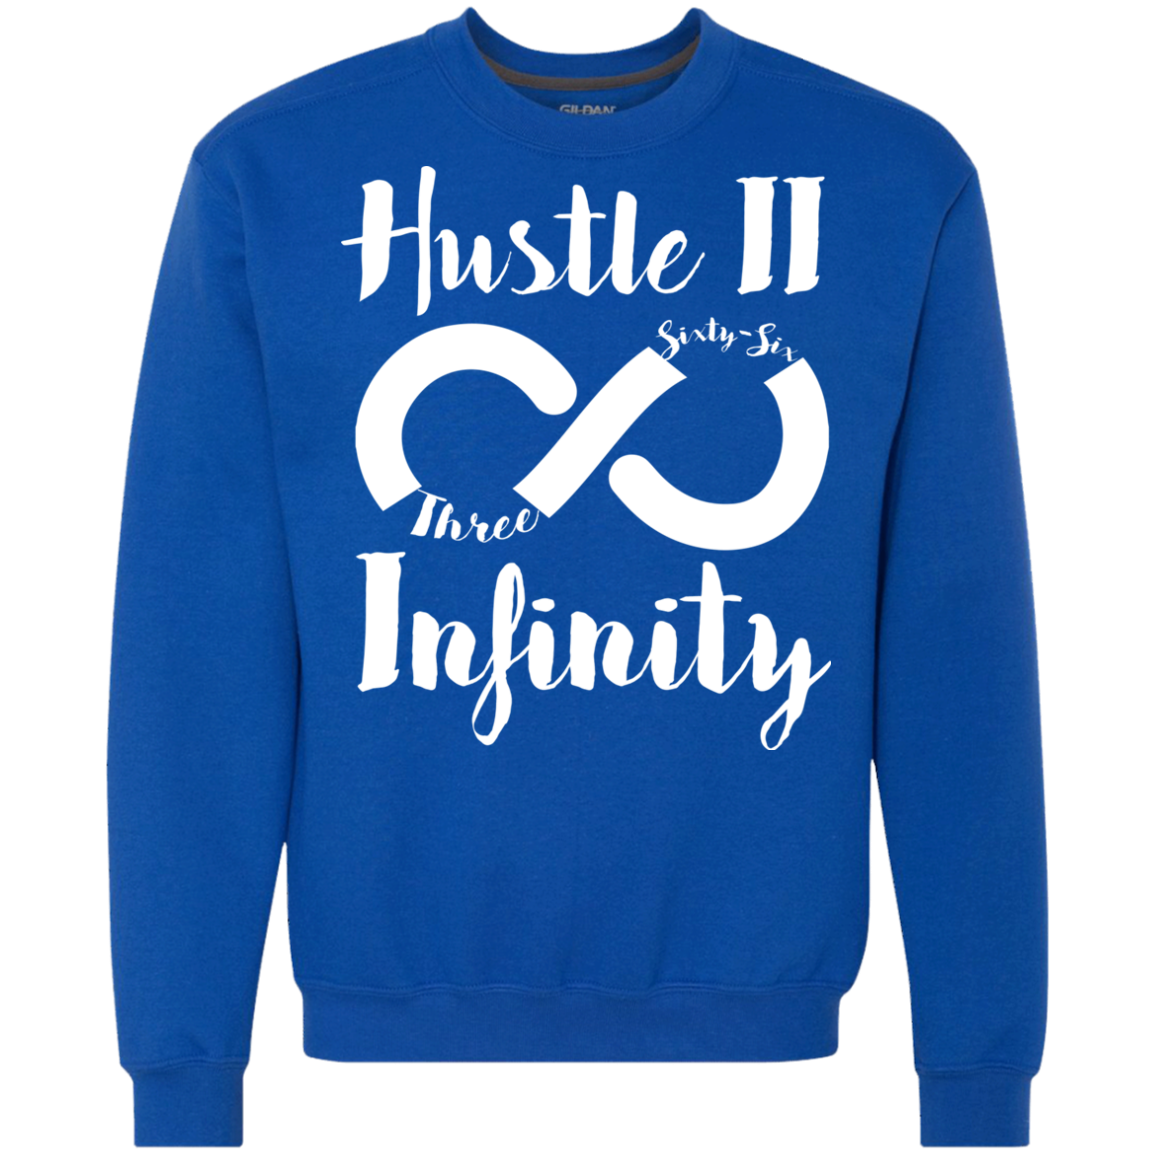 Hustle II Infinity Crew